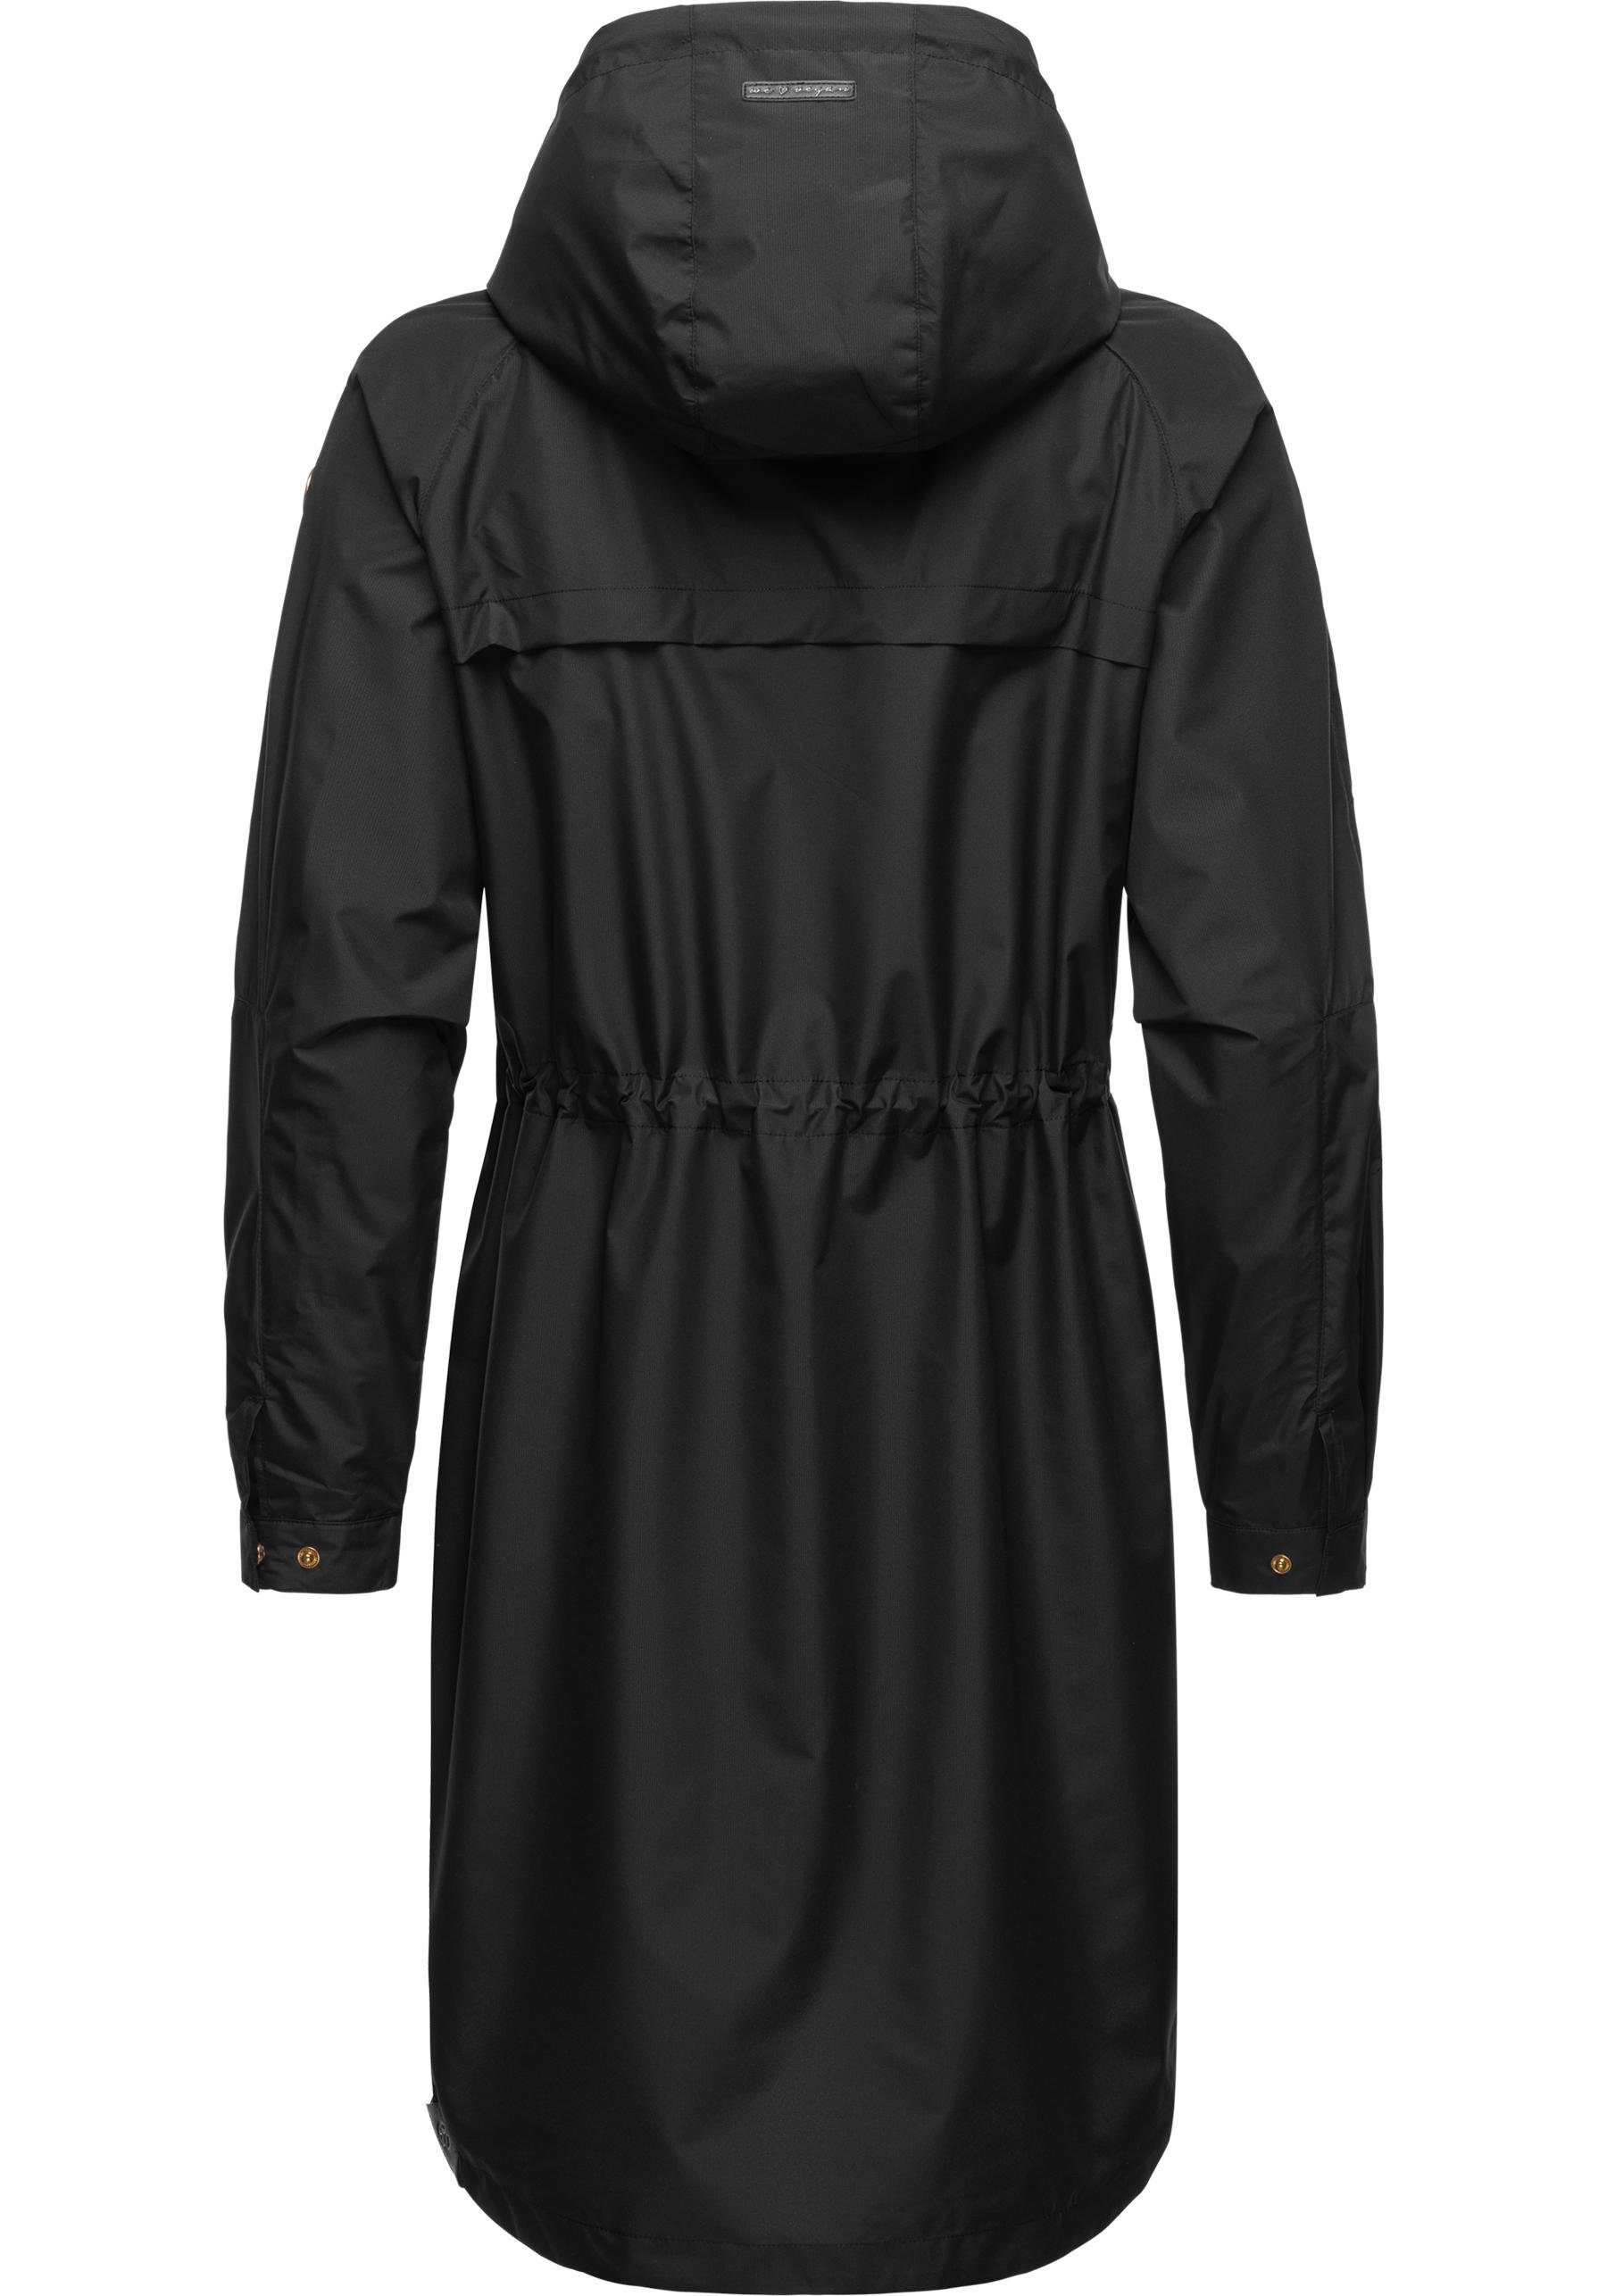 sehr und lange Outdoorjacke Belinka stylische schwarz Übergangsjacke leichte Ragwear